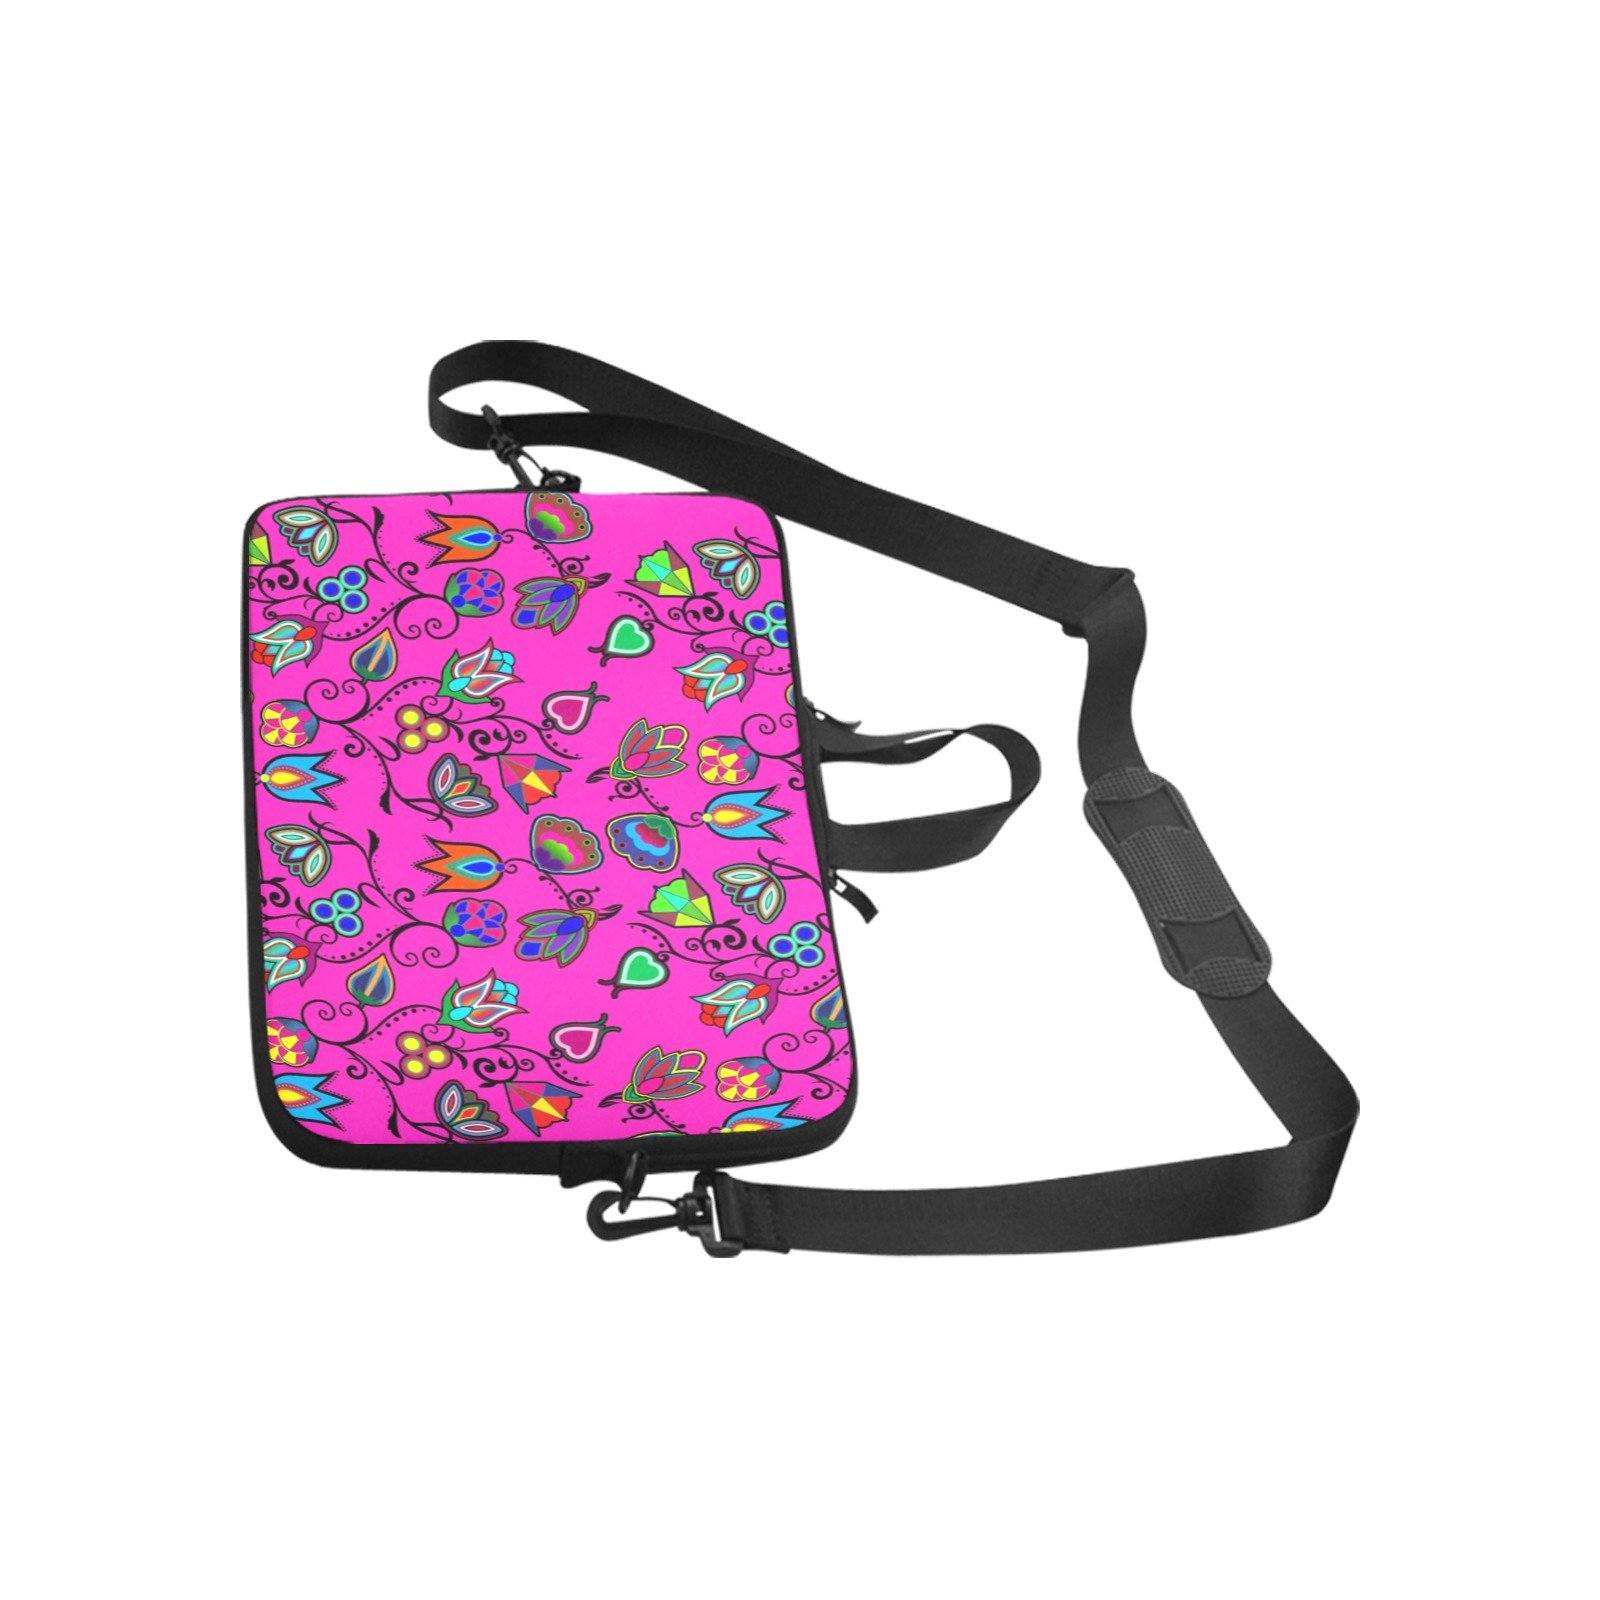 Indigenous Paisley Laptop Handbags 10" bag e-joyer 